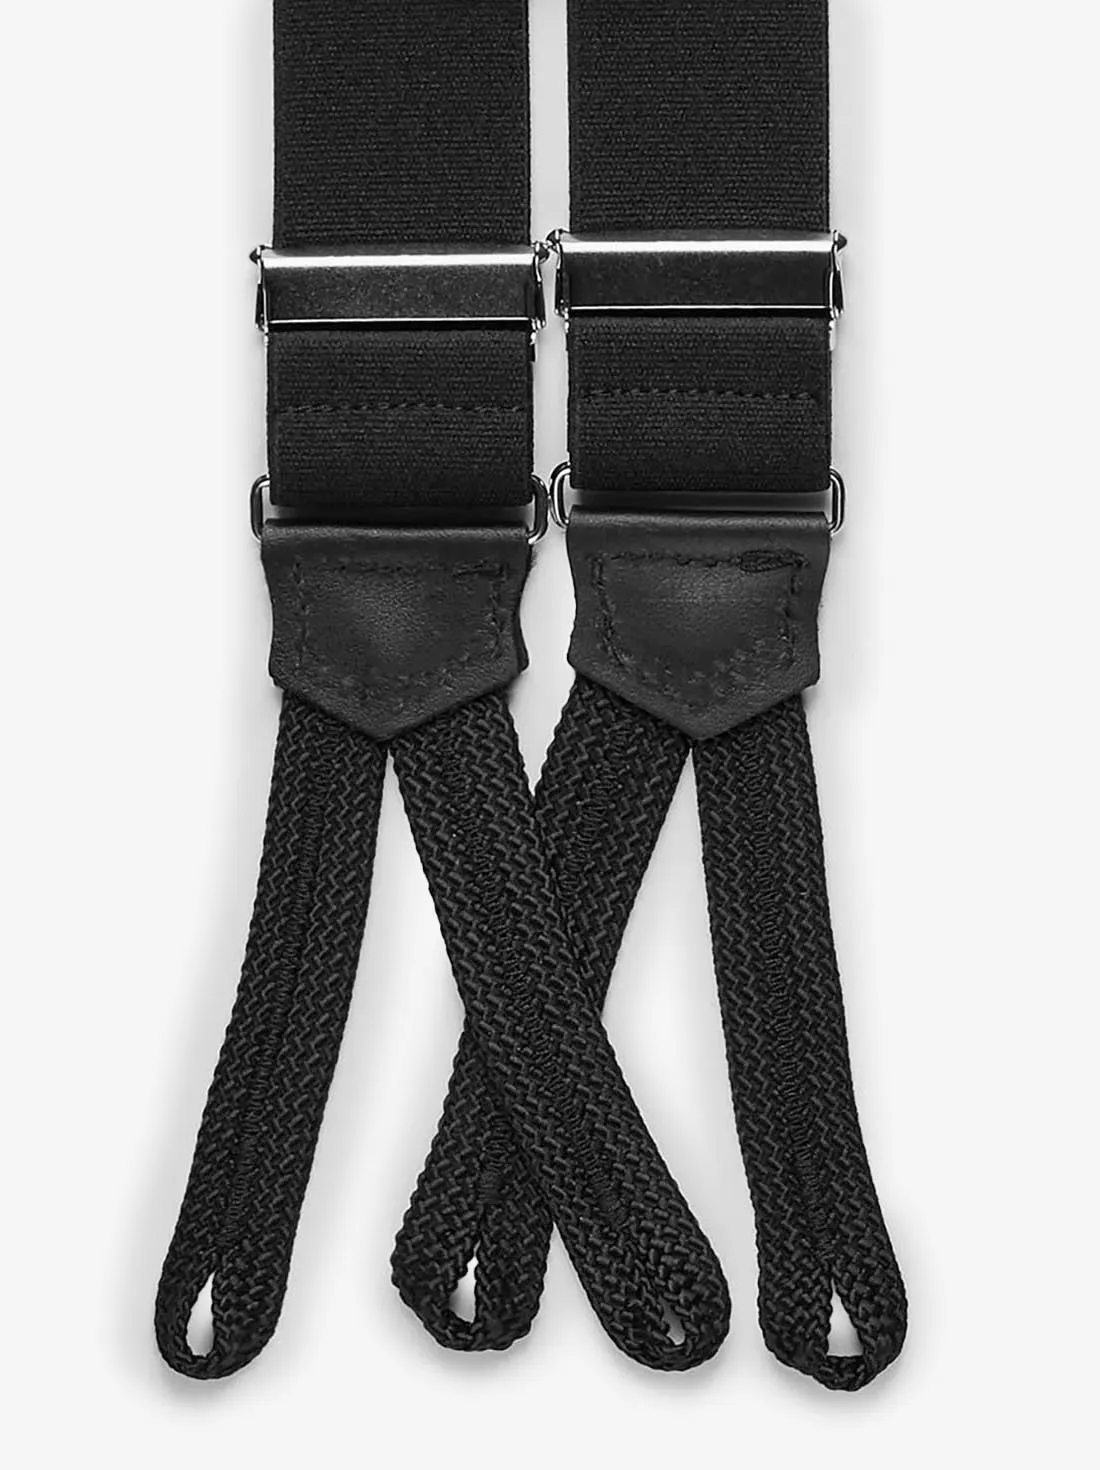 Black Suspenders Formal